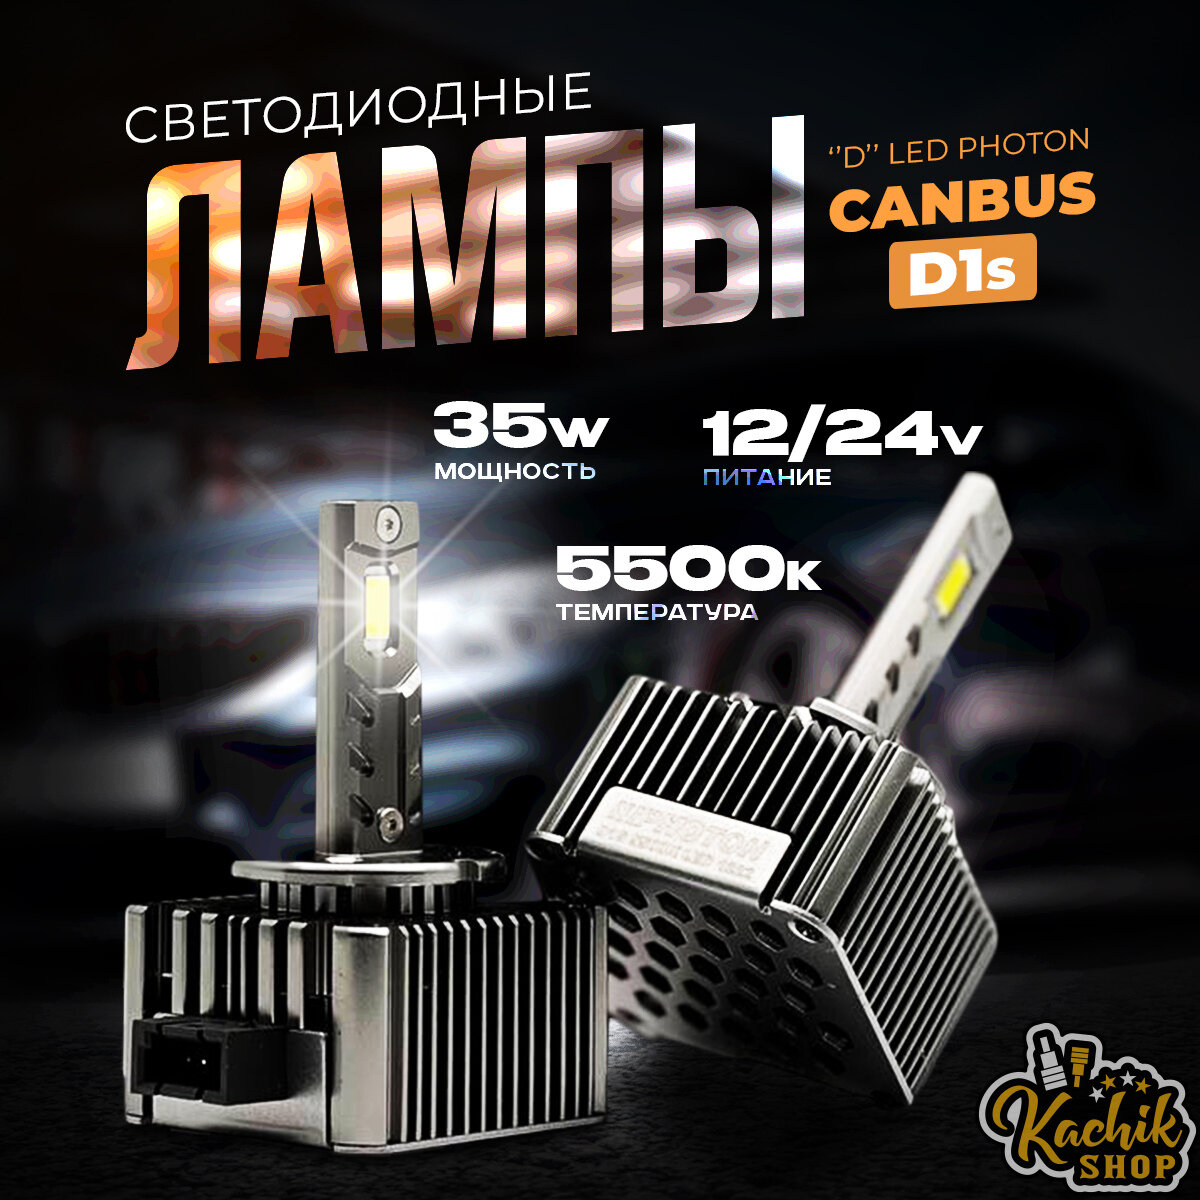 Светодиодные автомобильные лампы "D" LED PHOTON "Canbus" D1s. 12/24V 35W 5500K 2шт.